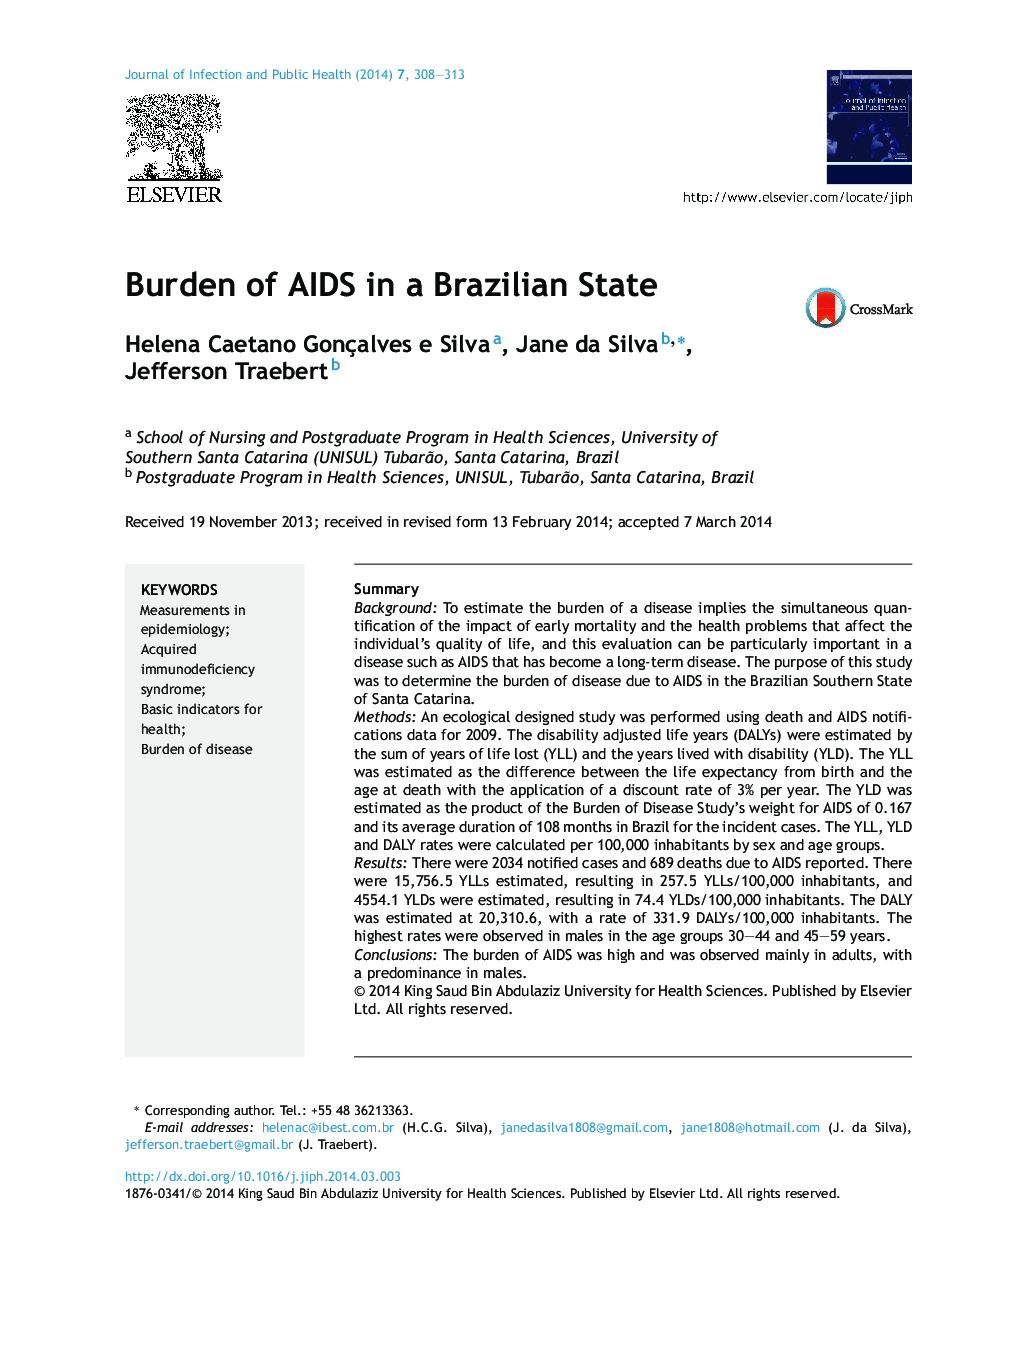 بار بیماری ایدز در یک کشور برزیلی 